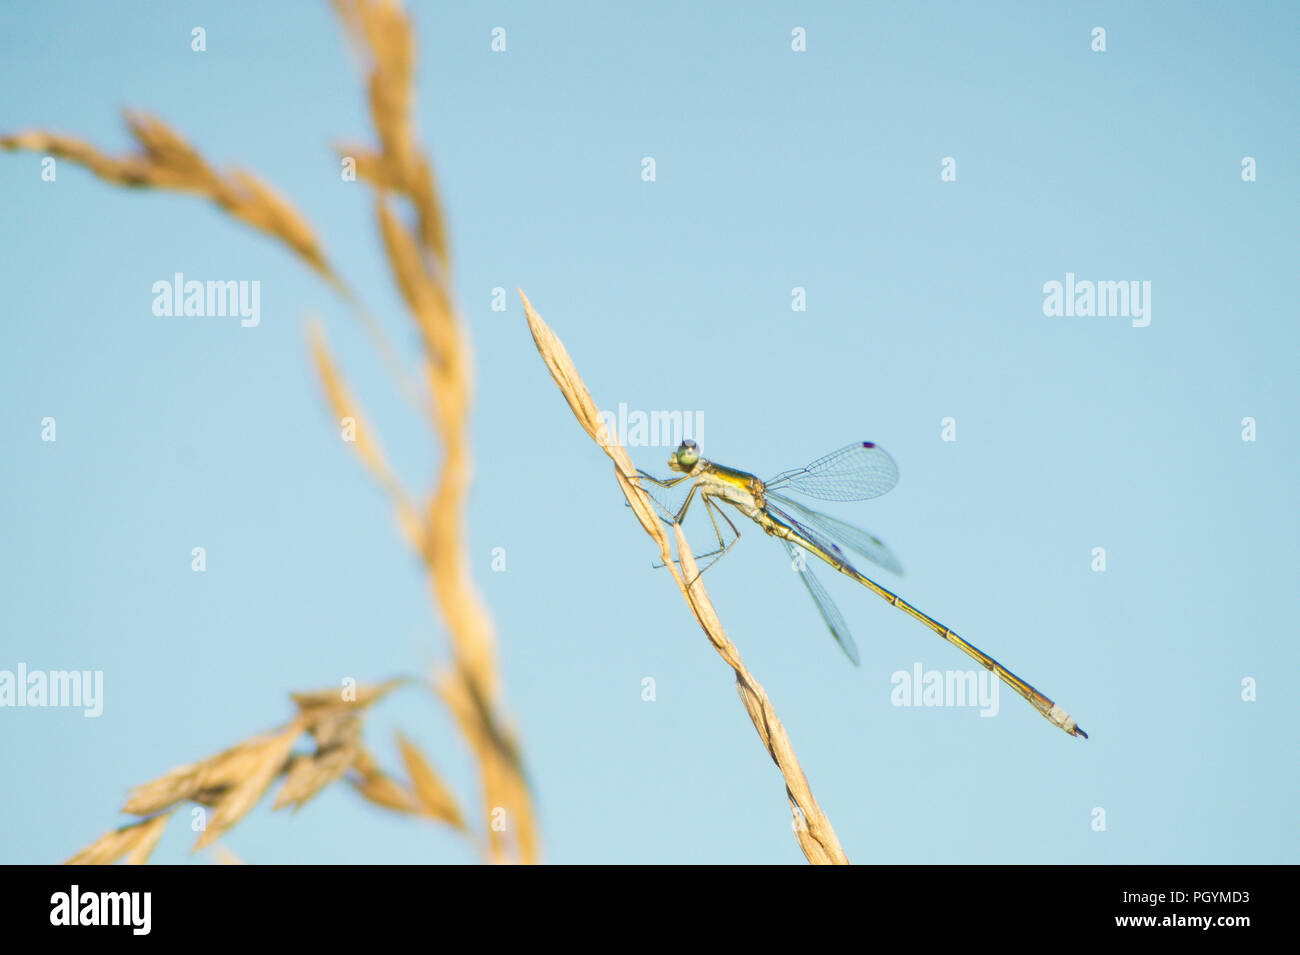 Grüne damselfly ruht sich mit ausgebreiteten Flügeln auf einer trockenen gelben Grashalm, gegen eine verschwommene blauen und gelben Hintergrund. Stockfoto